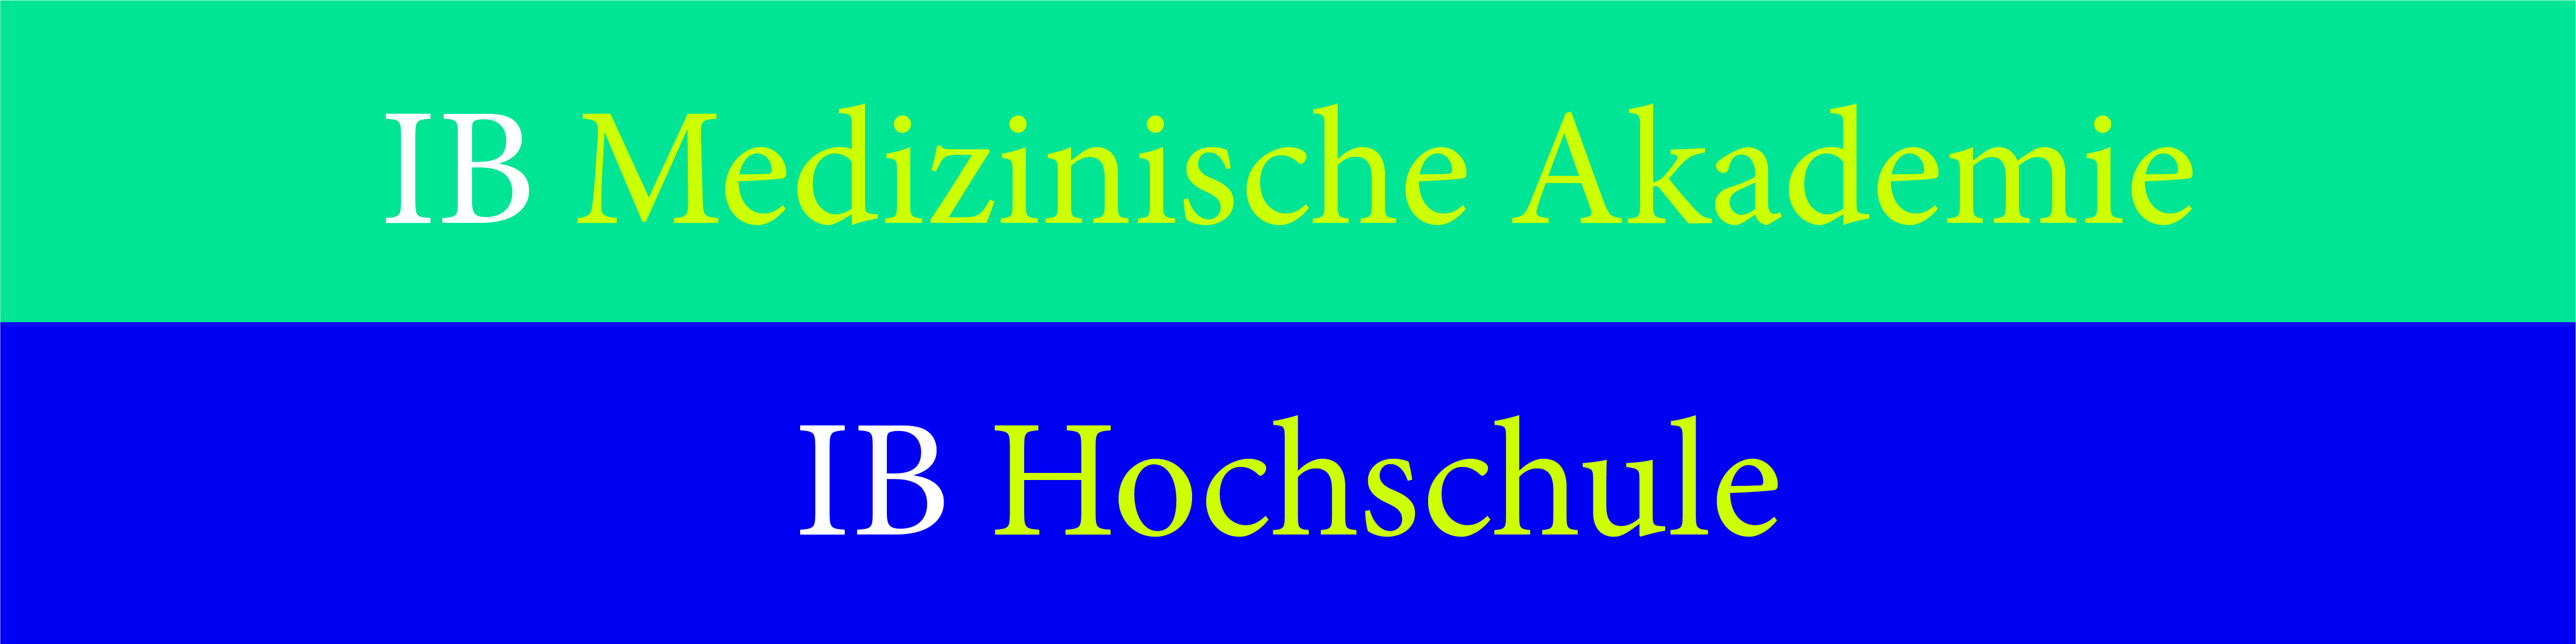 IB Hochschule || Medizinische Akademie Stuttgart Logo